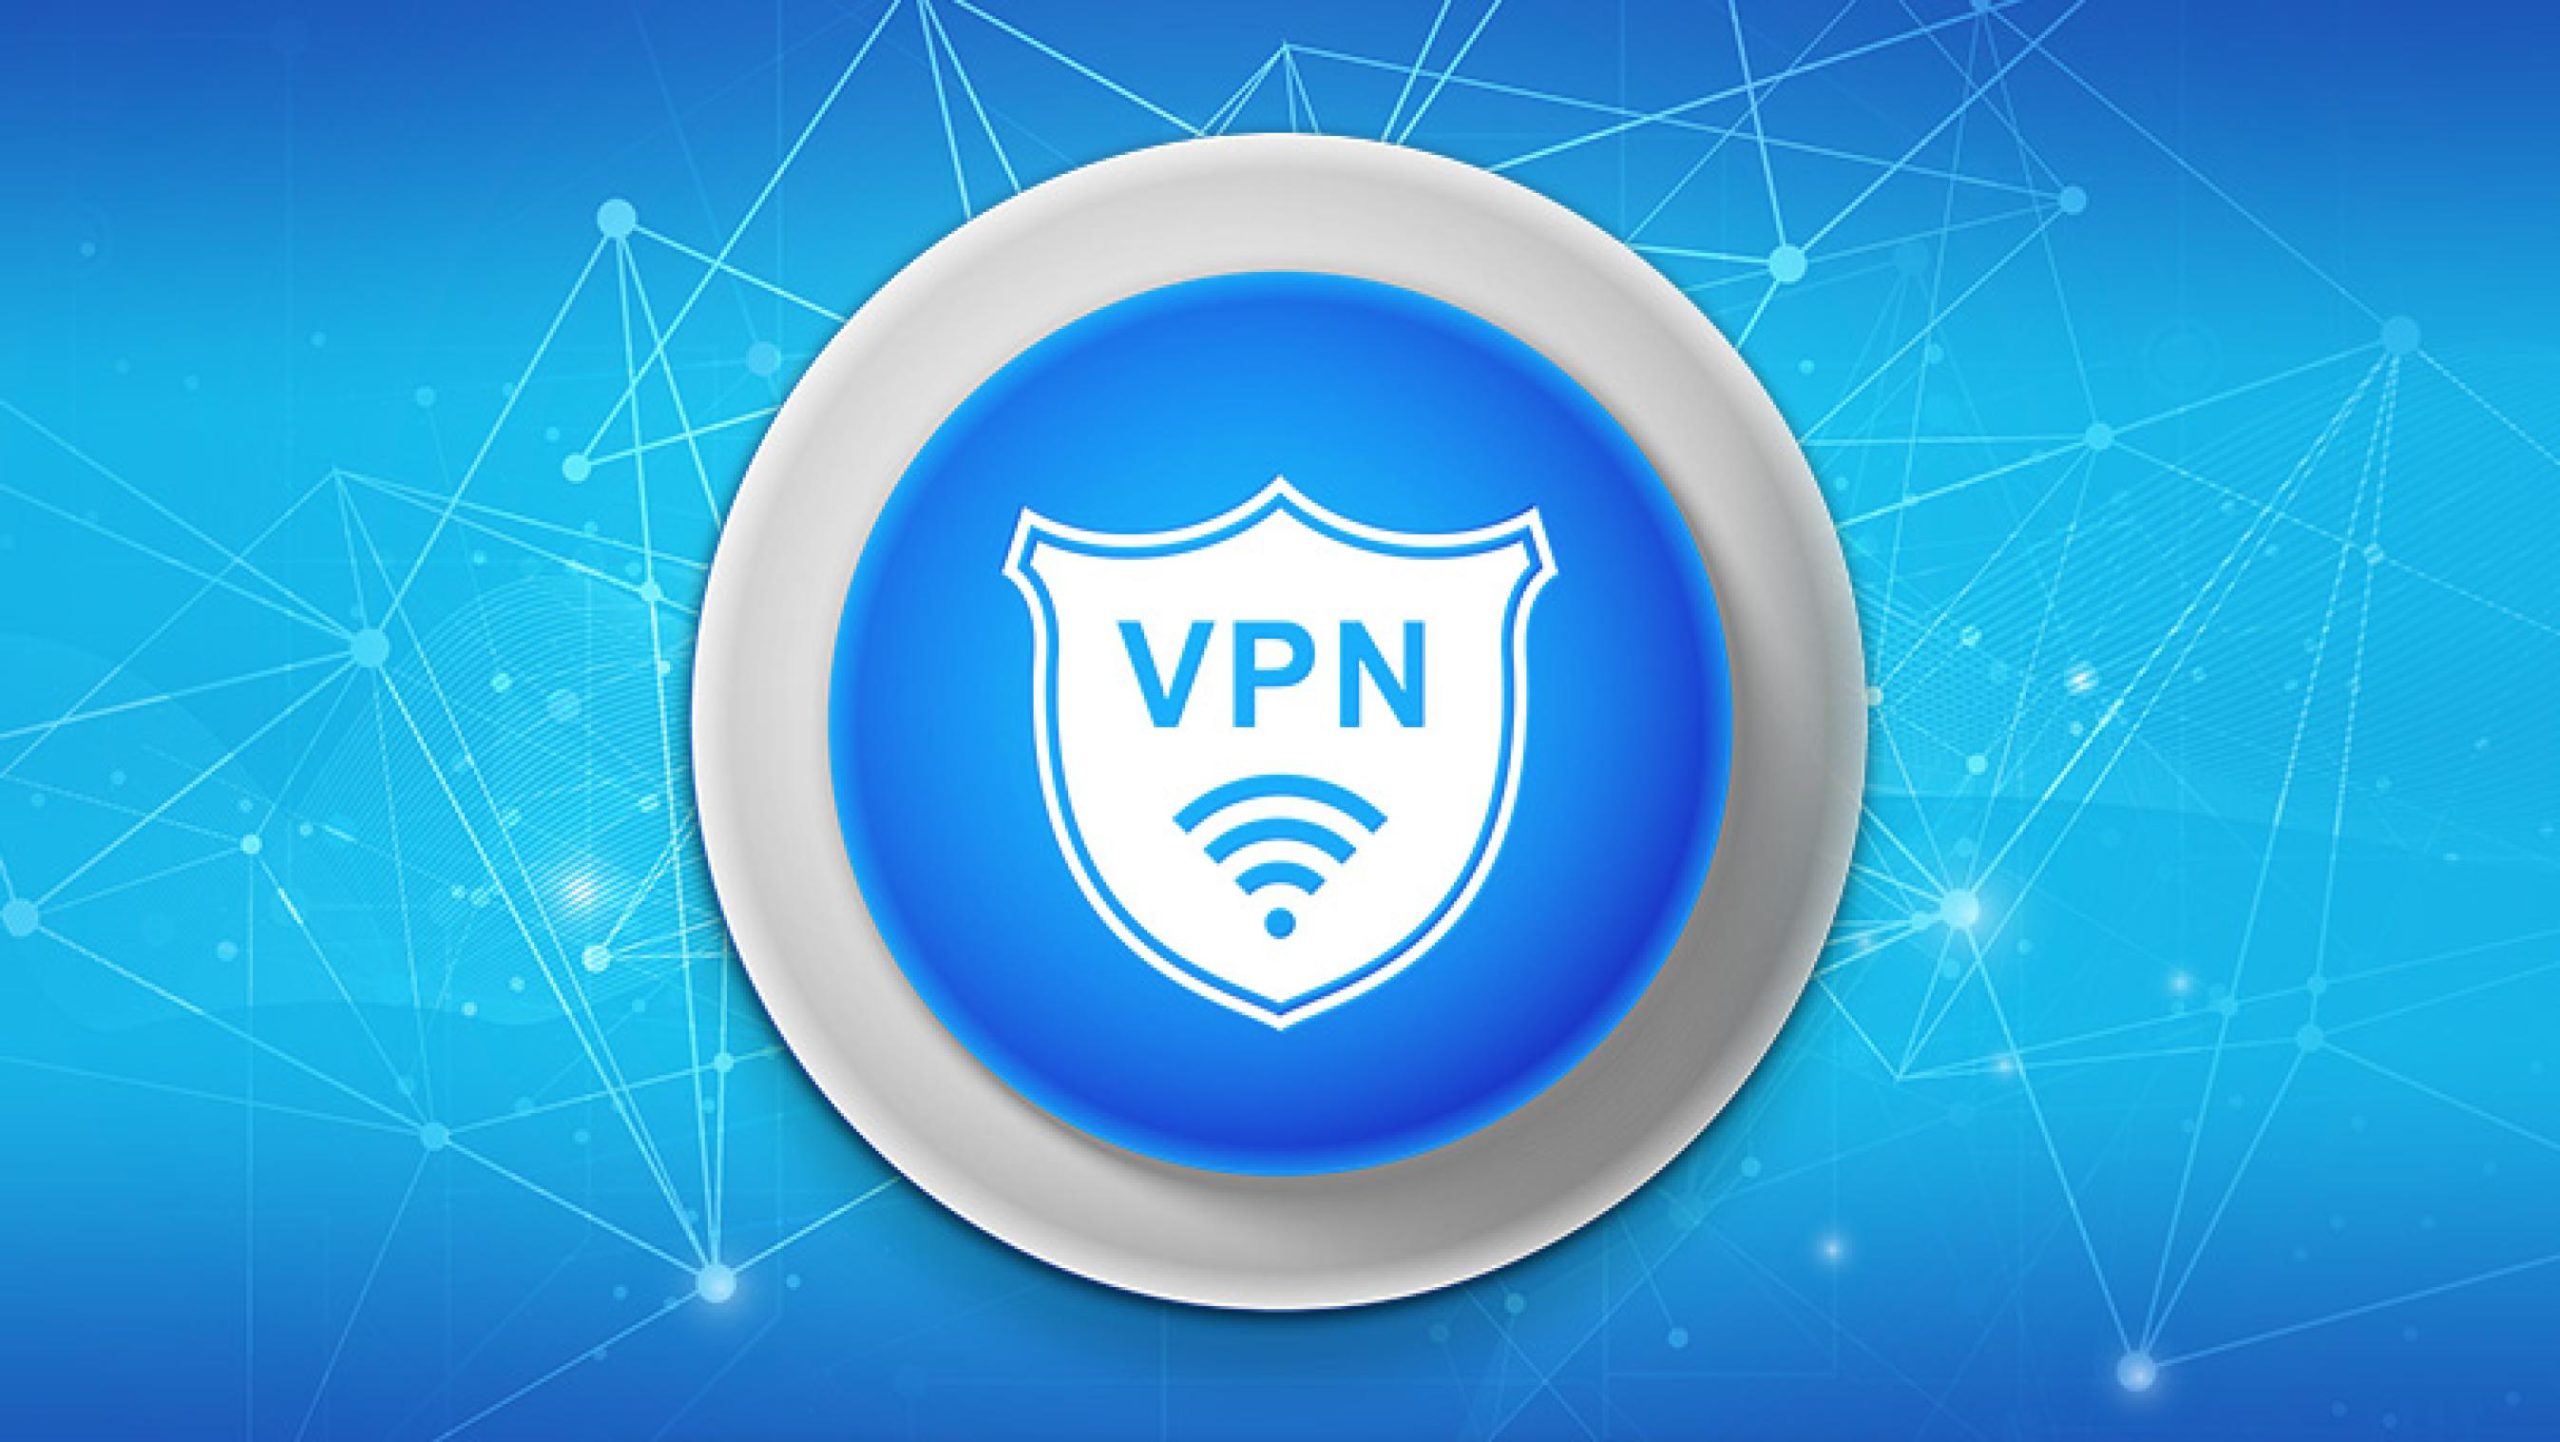 Best Free VPN Apps